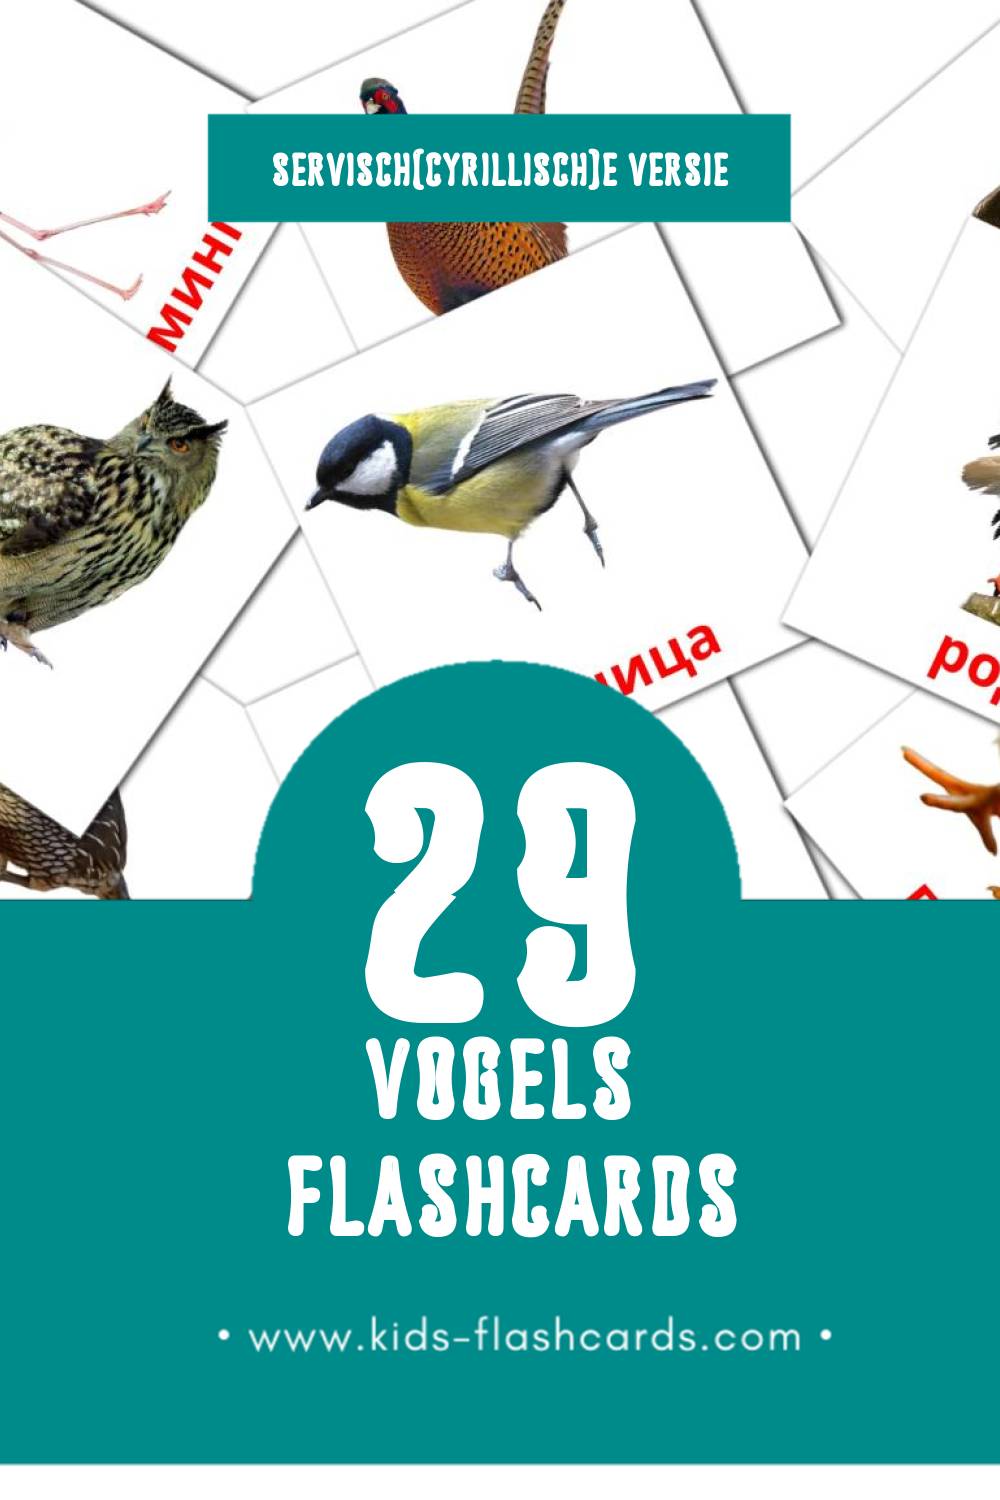 Visuele Птице Flashcards voor Kleuters (29 kaarten in het Servisch(cyrillisch))